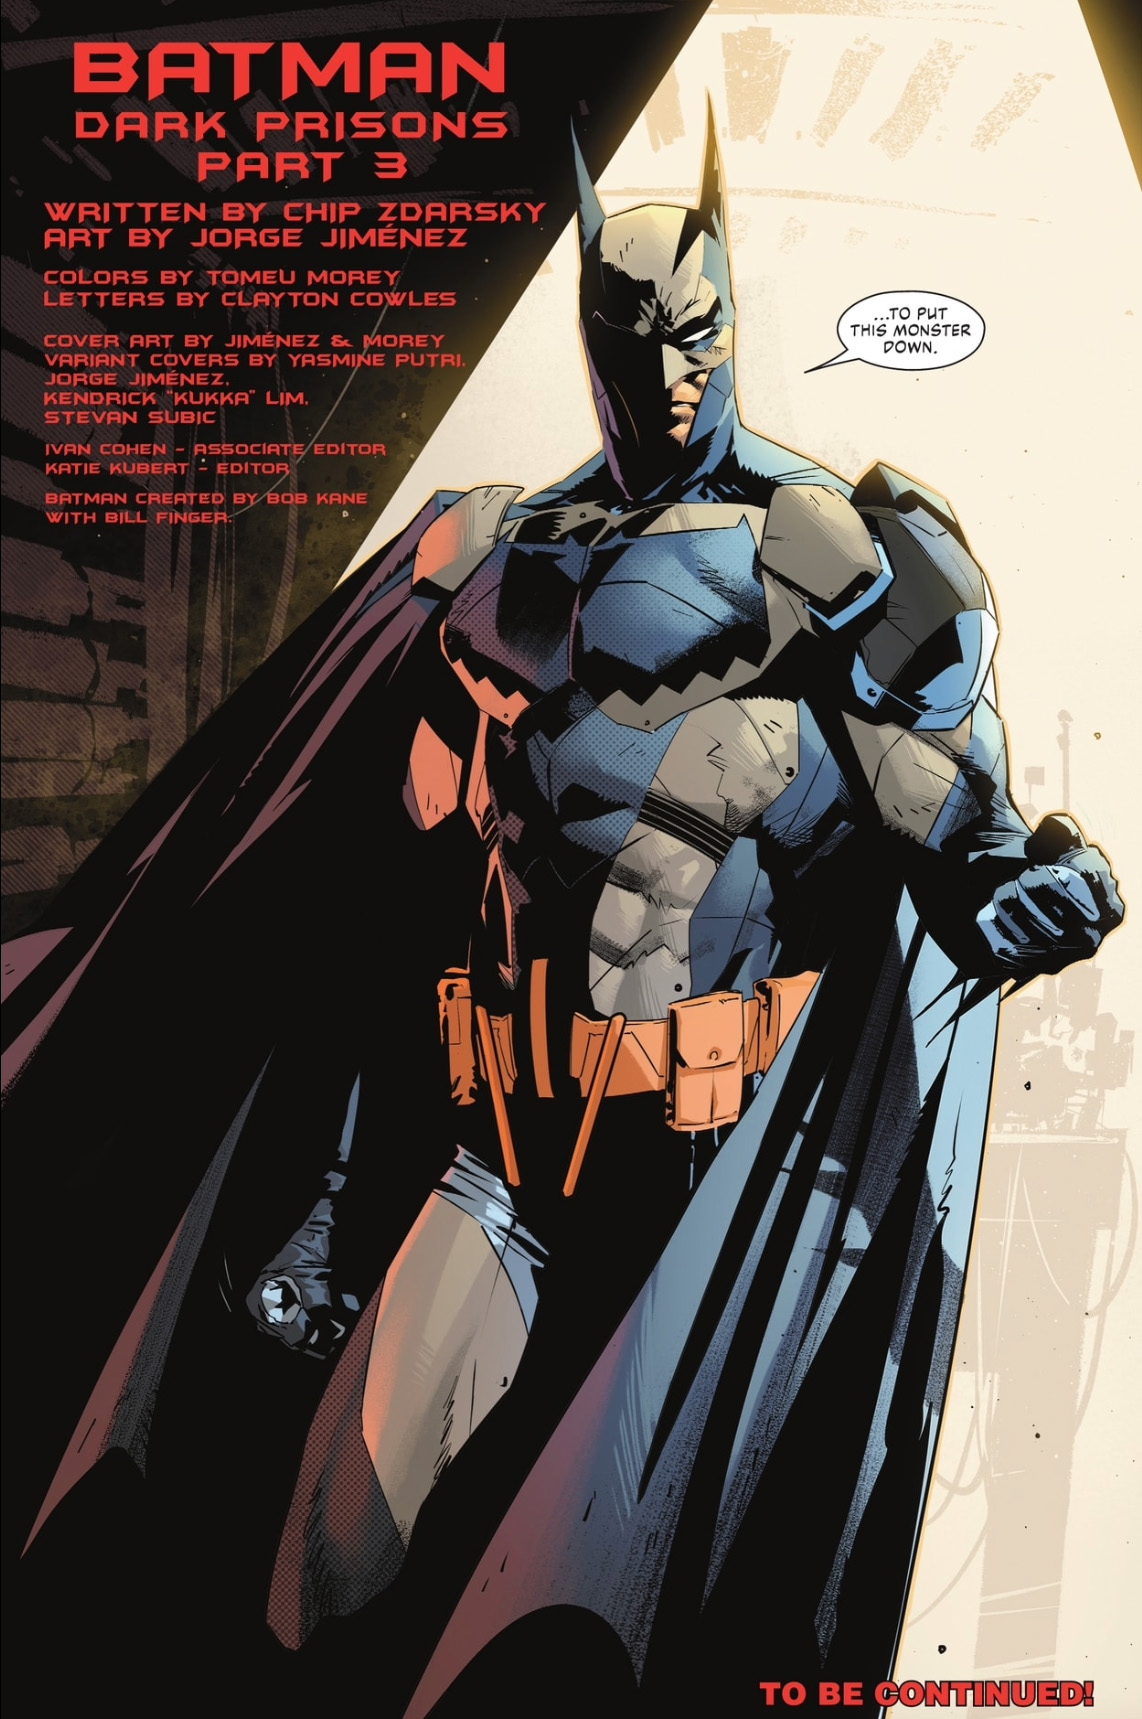 Art from Batman #147